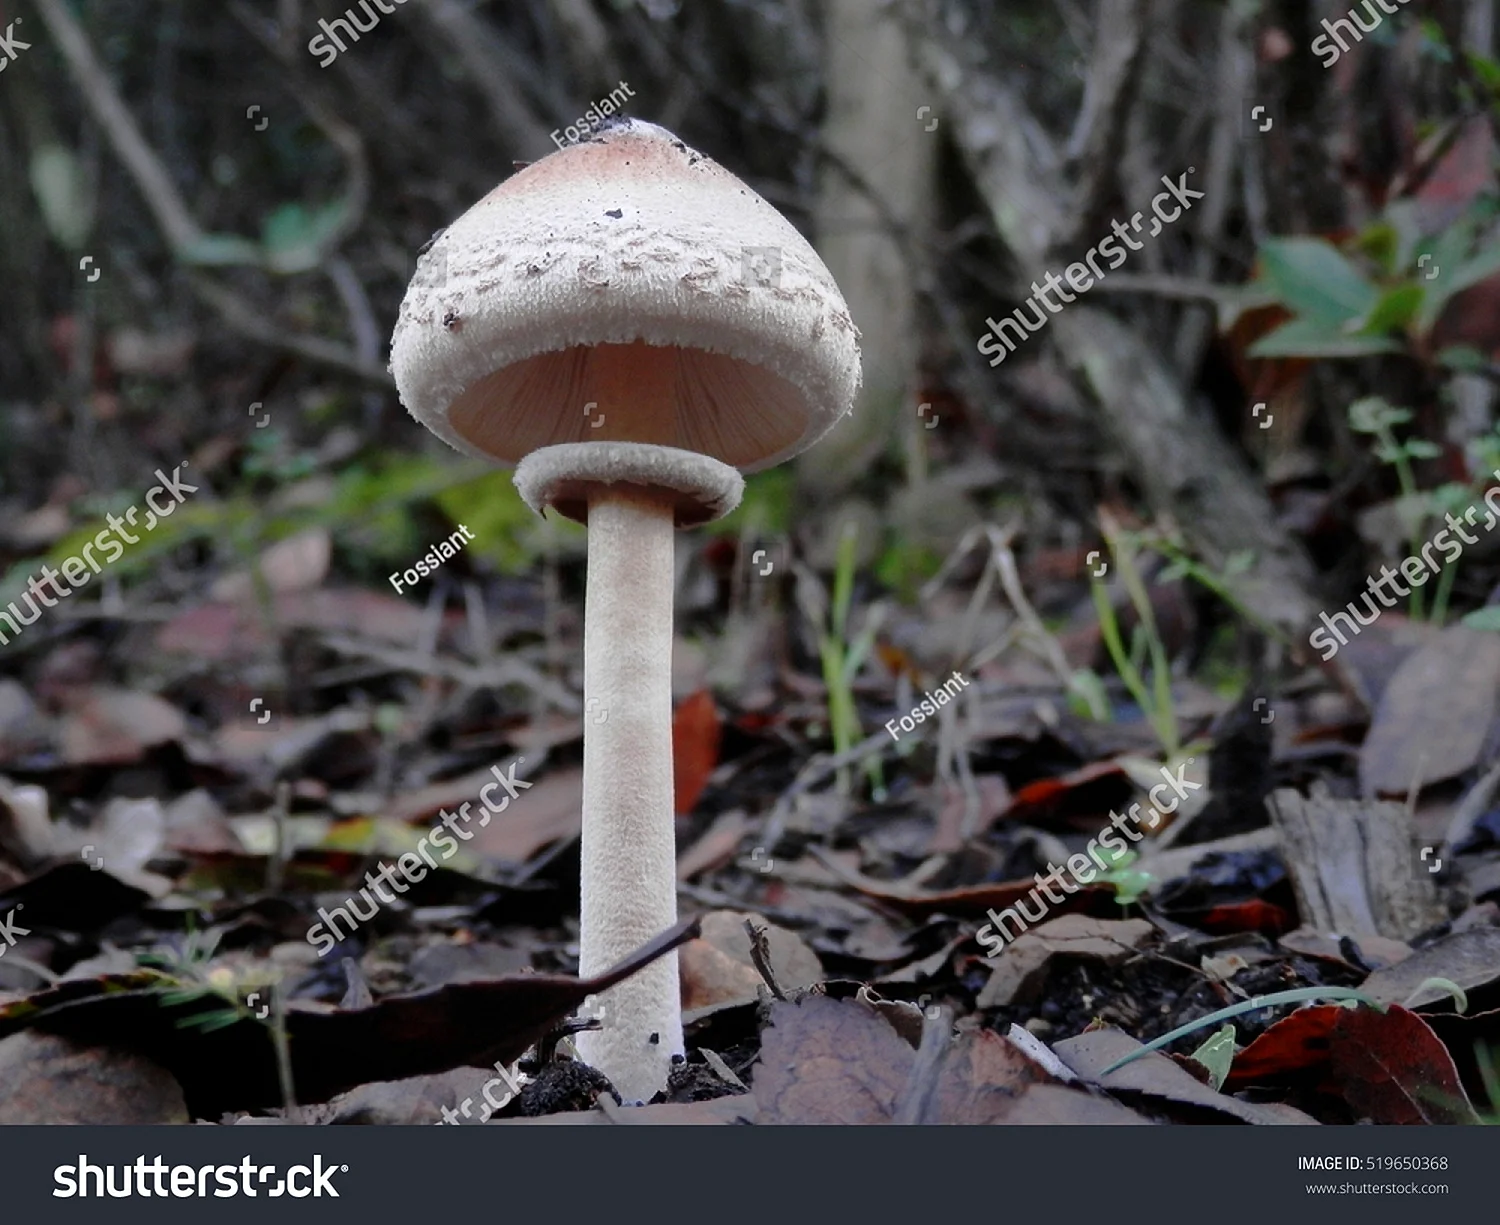 ядовитые грибы вологодской области фото и название